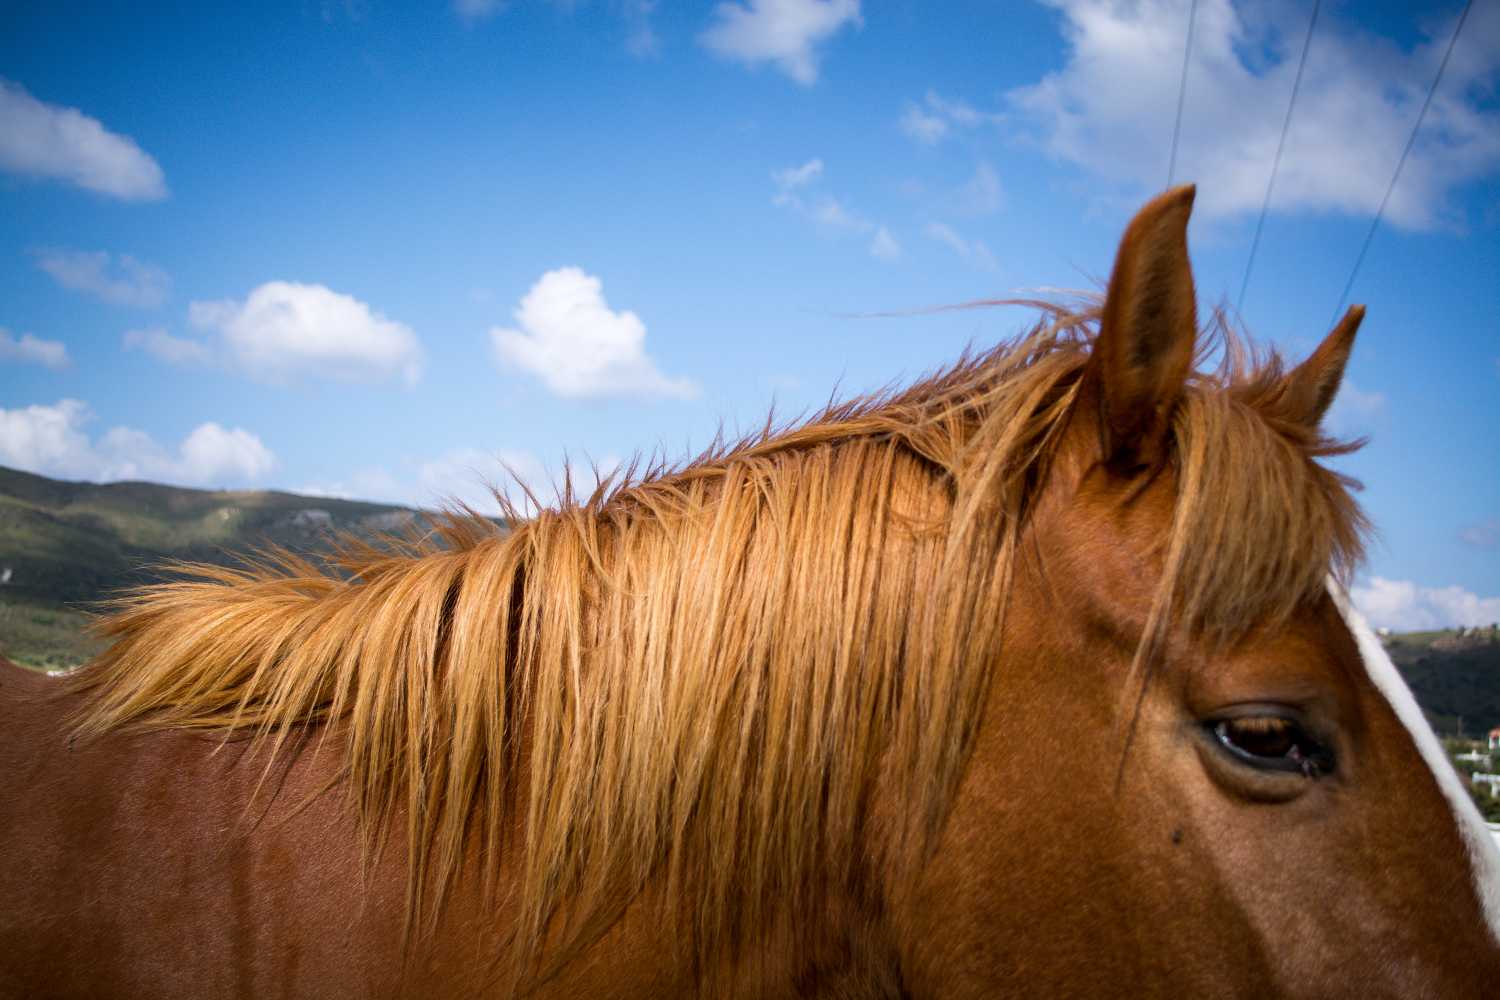 Χανιά: Άφησε το άλογό του να πεθάνει δεμένο μέσα στον ήλιο χωρίς νερό